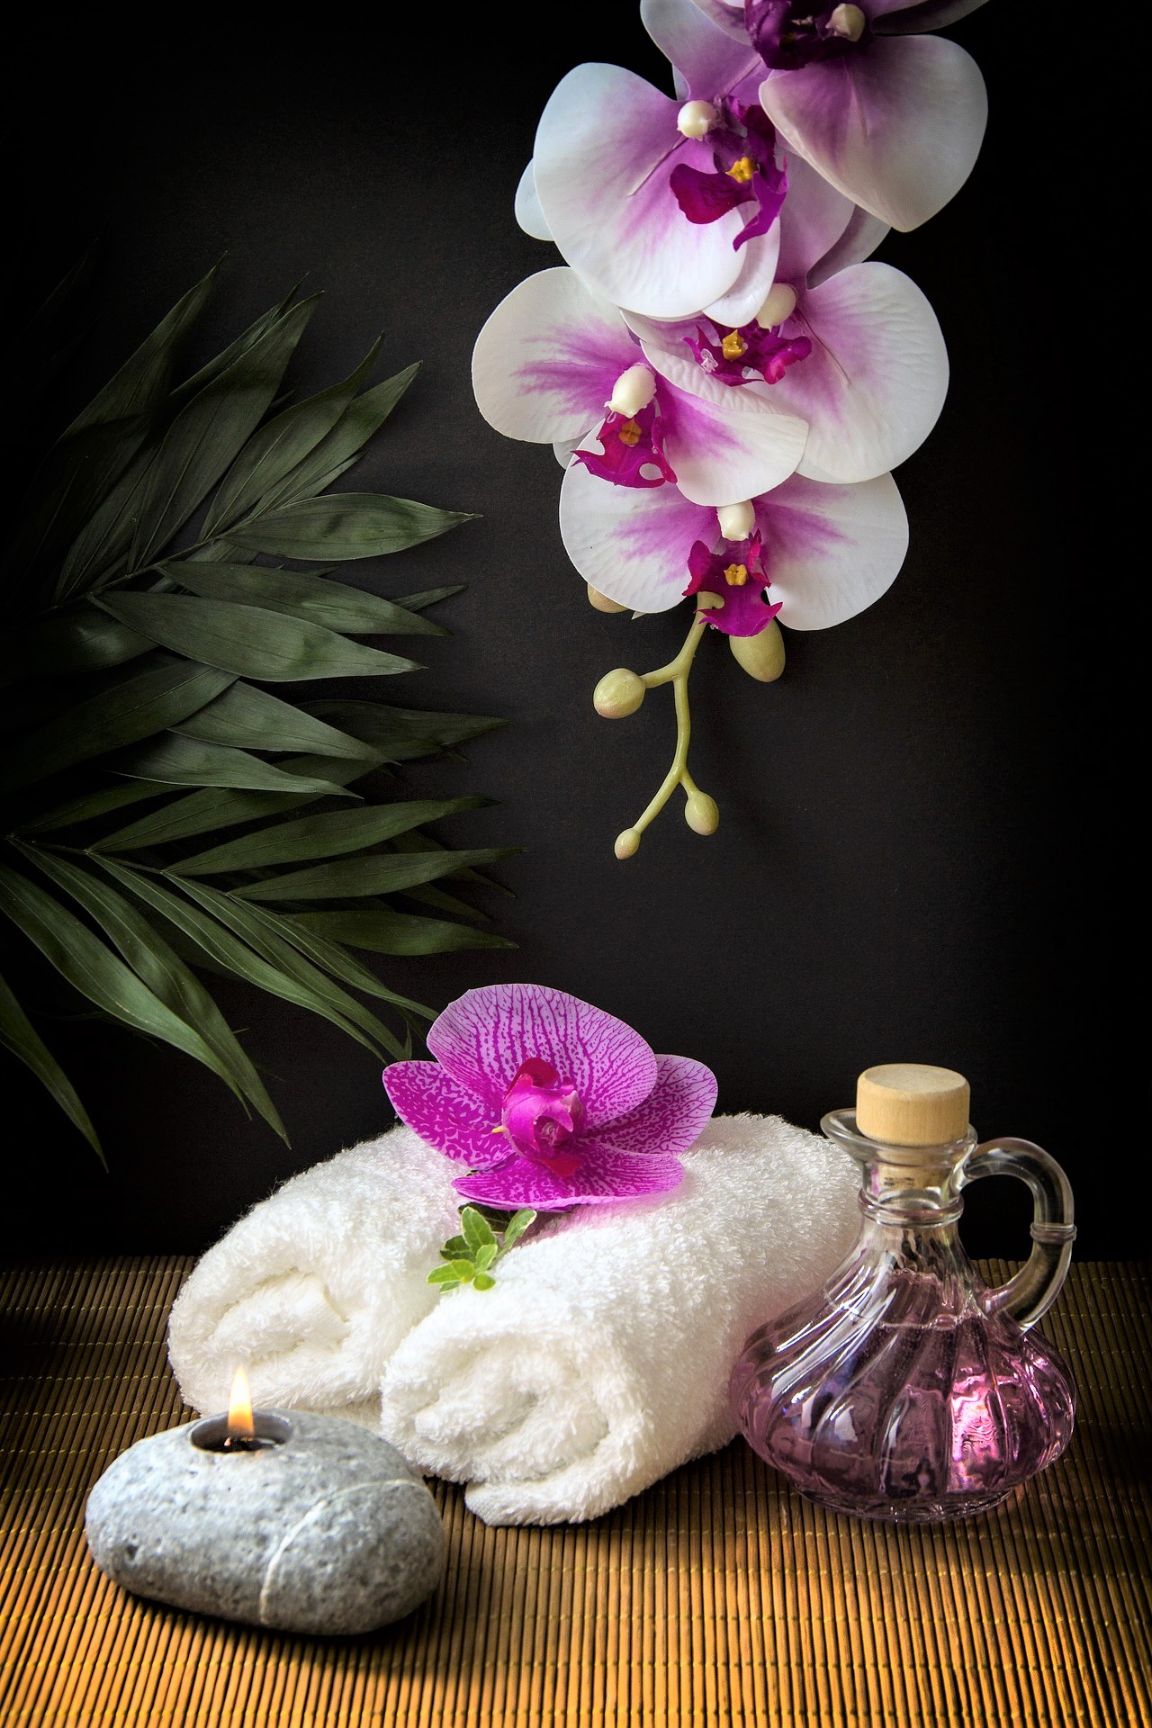 https://pixabay.com/photos/wellness-carafe-towels-white-3793413/